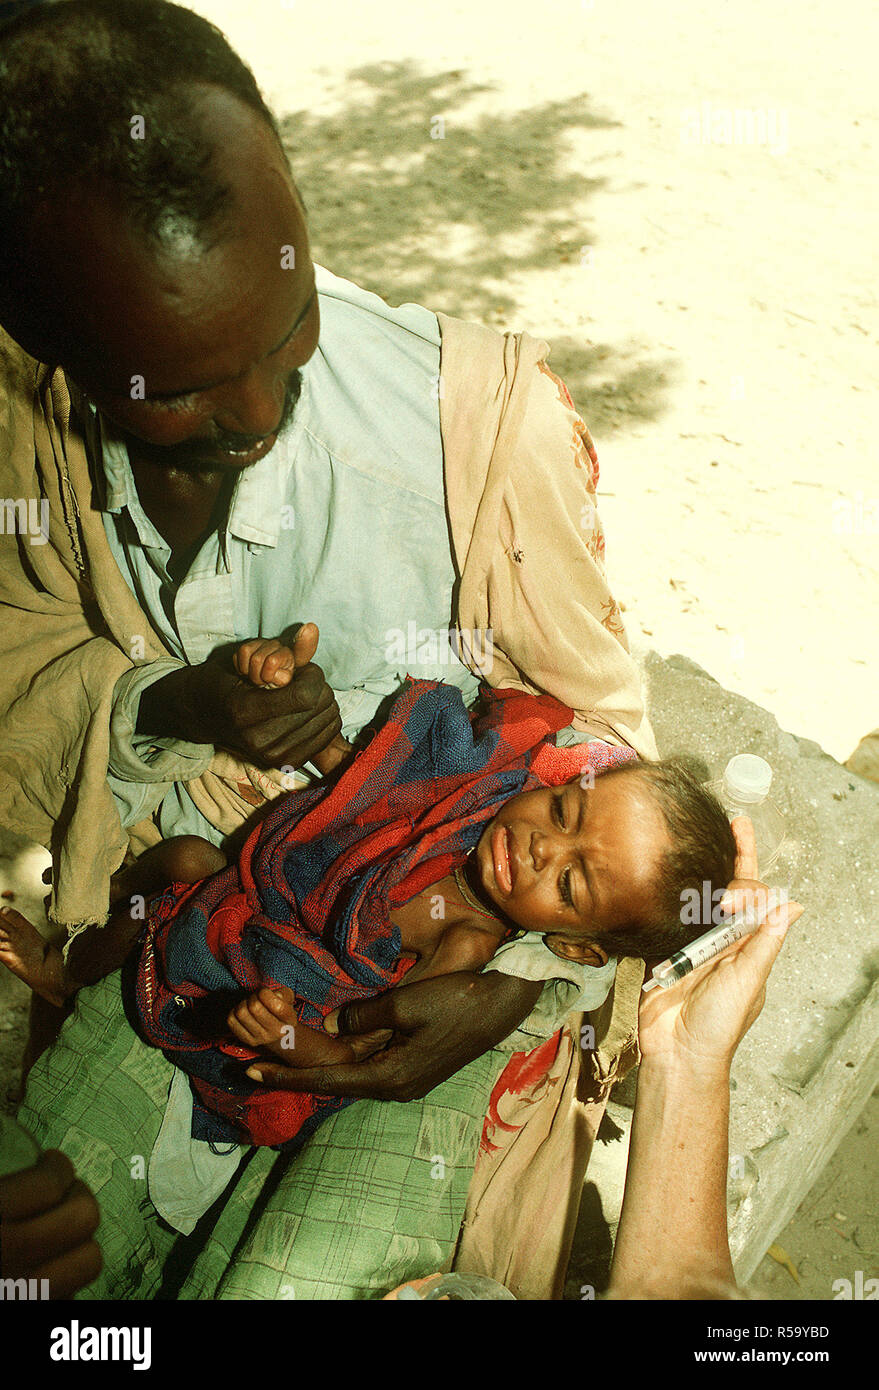 1993 - Un réfugié somalien l'enfant pleure après avoir été donné de l'eau au moyen d'une seringue à un poste de secours mis en place lors de l'Opération Restore Hope les efforts de secours. Bardera (Somalie) Banque D'Images